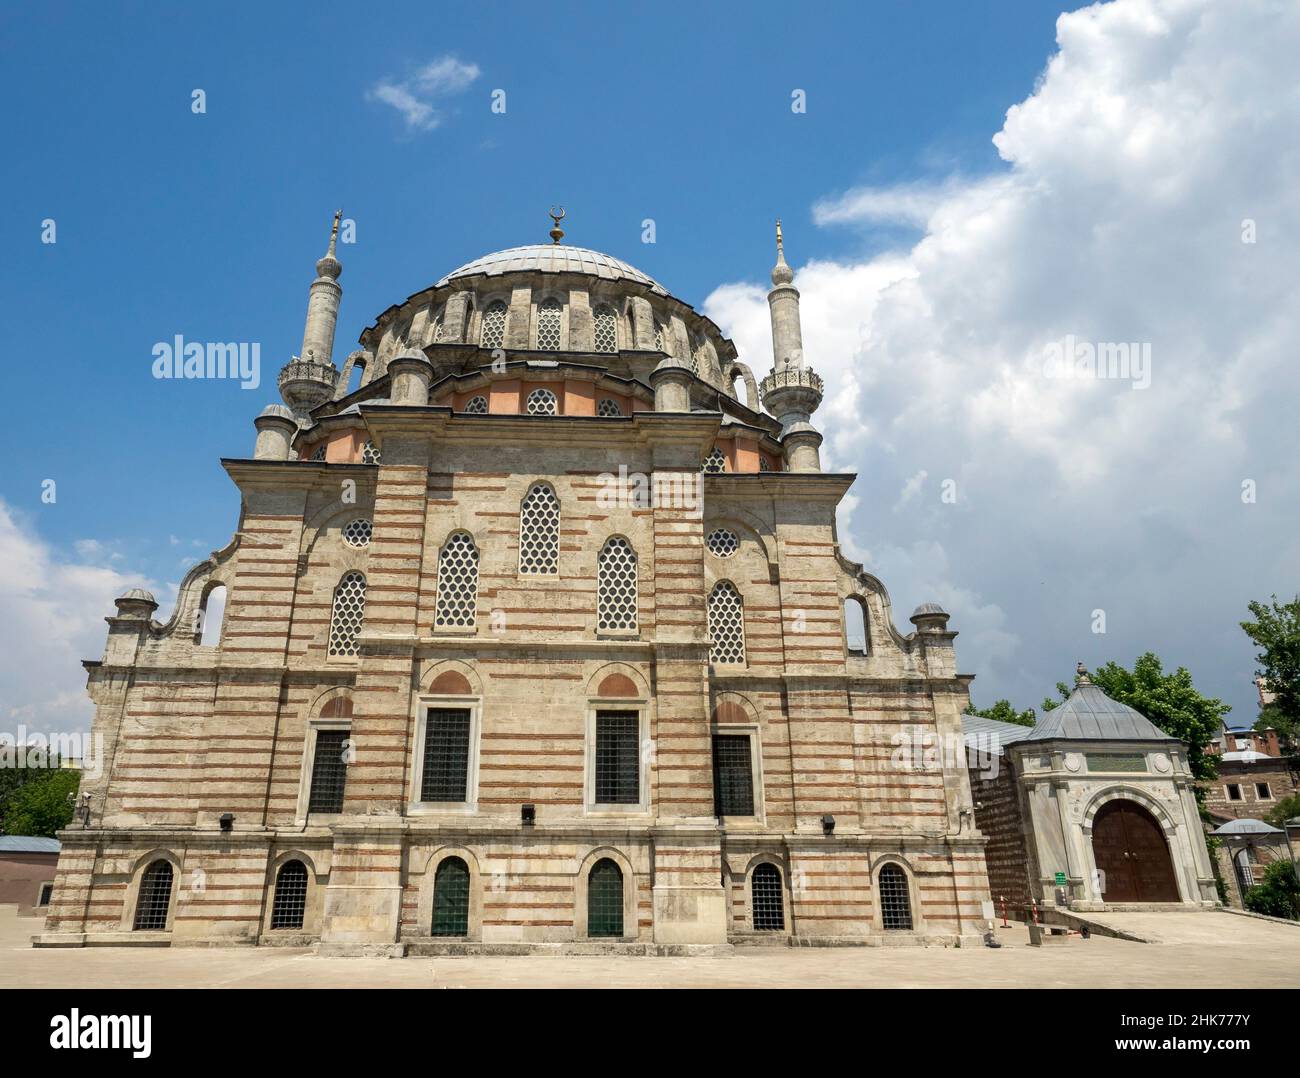 La Moschea di Laleli ha conosciuto anche una moschea di tulipani. Esterno della Moschea Laleli, una moschea imperiale ottomana del XVIII secolo situata a Laleli, Fatih, Istanbul, Tu Foto Stock